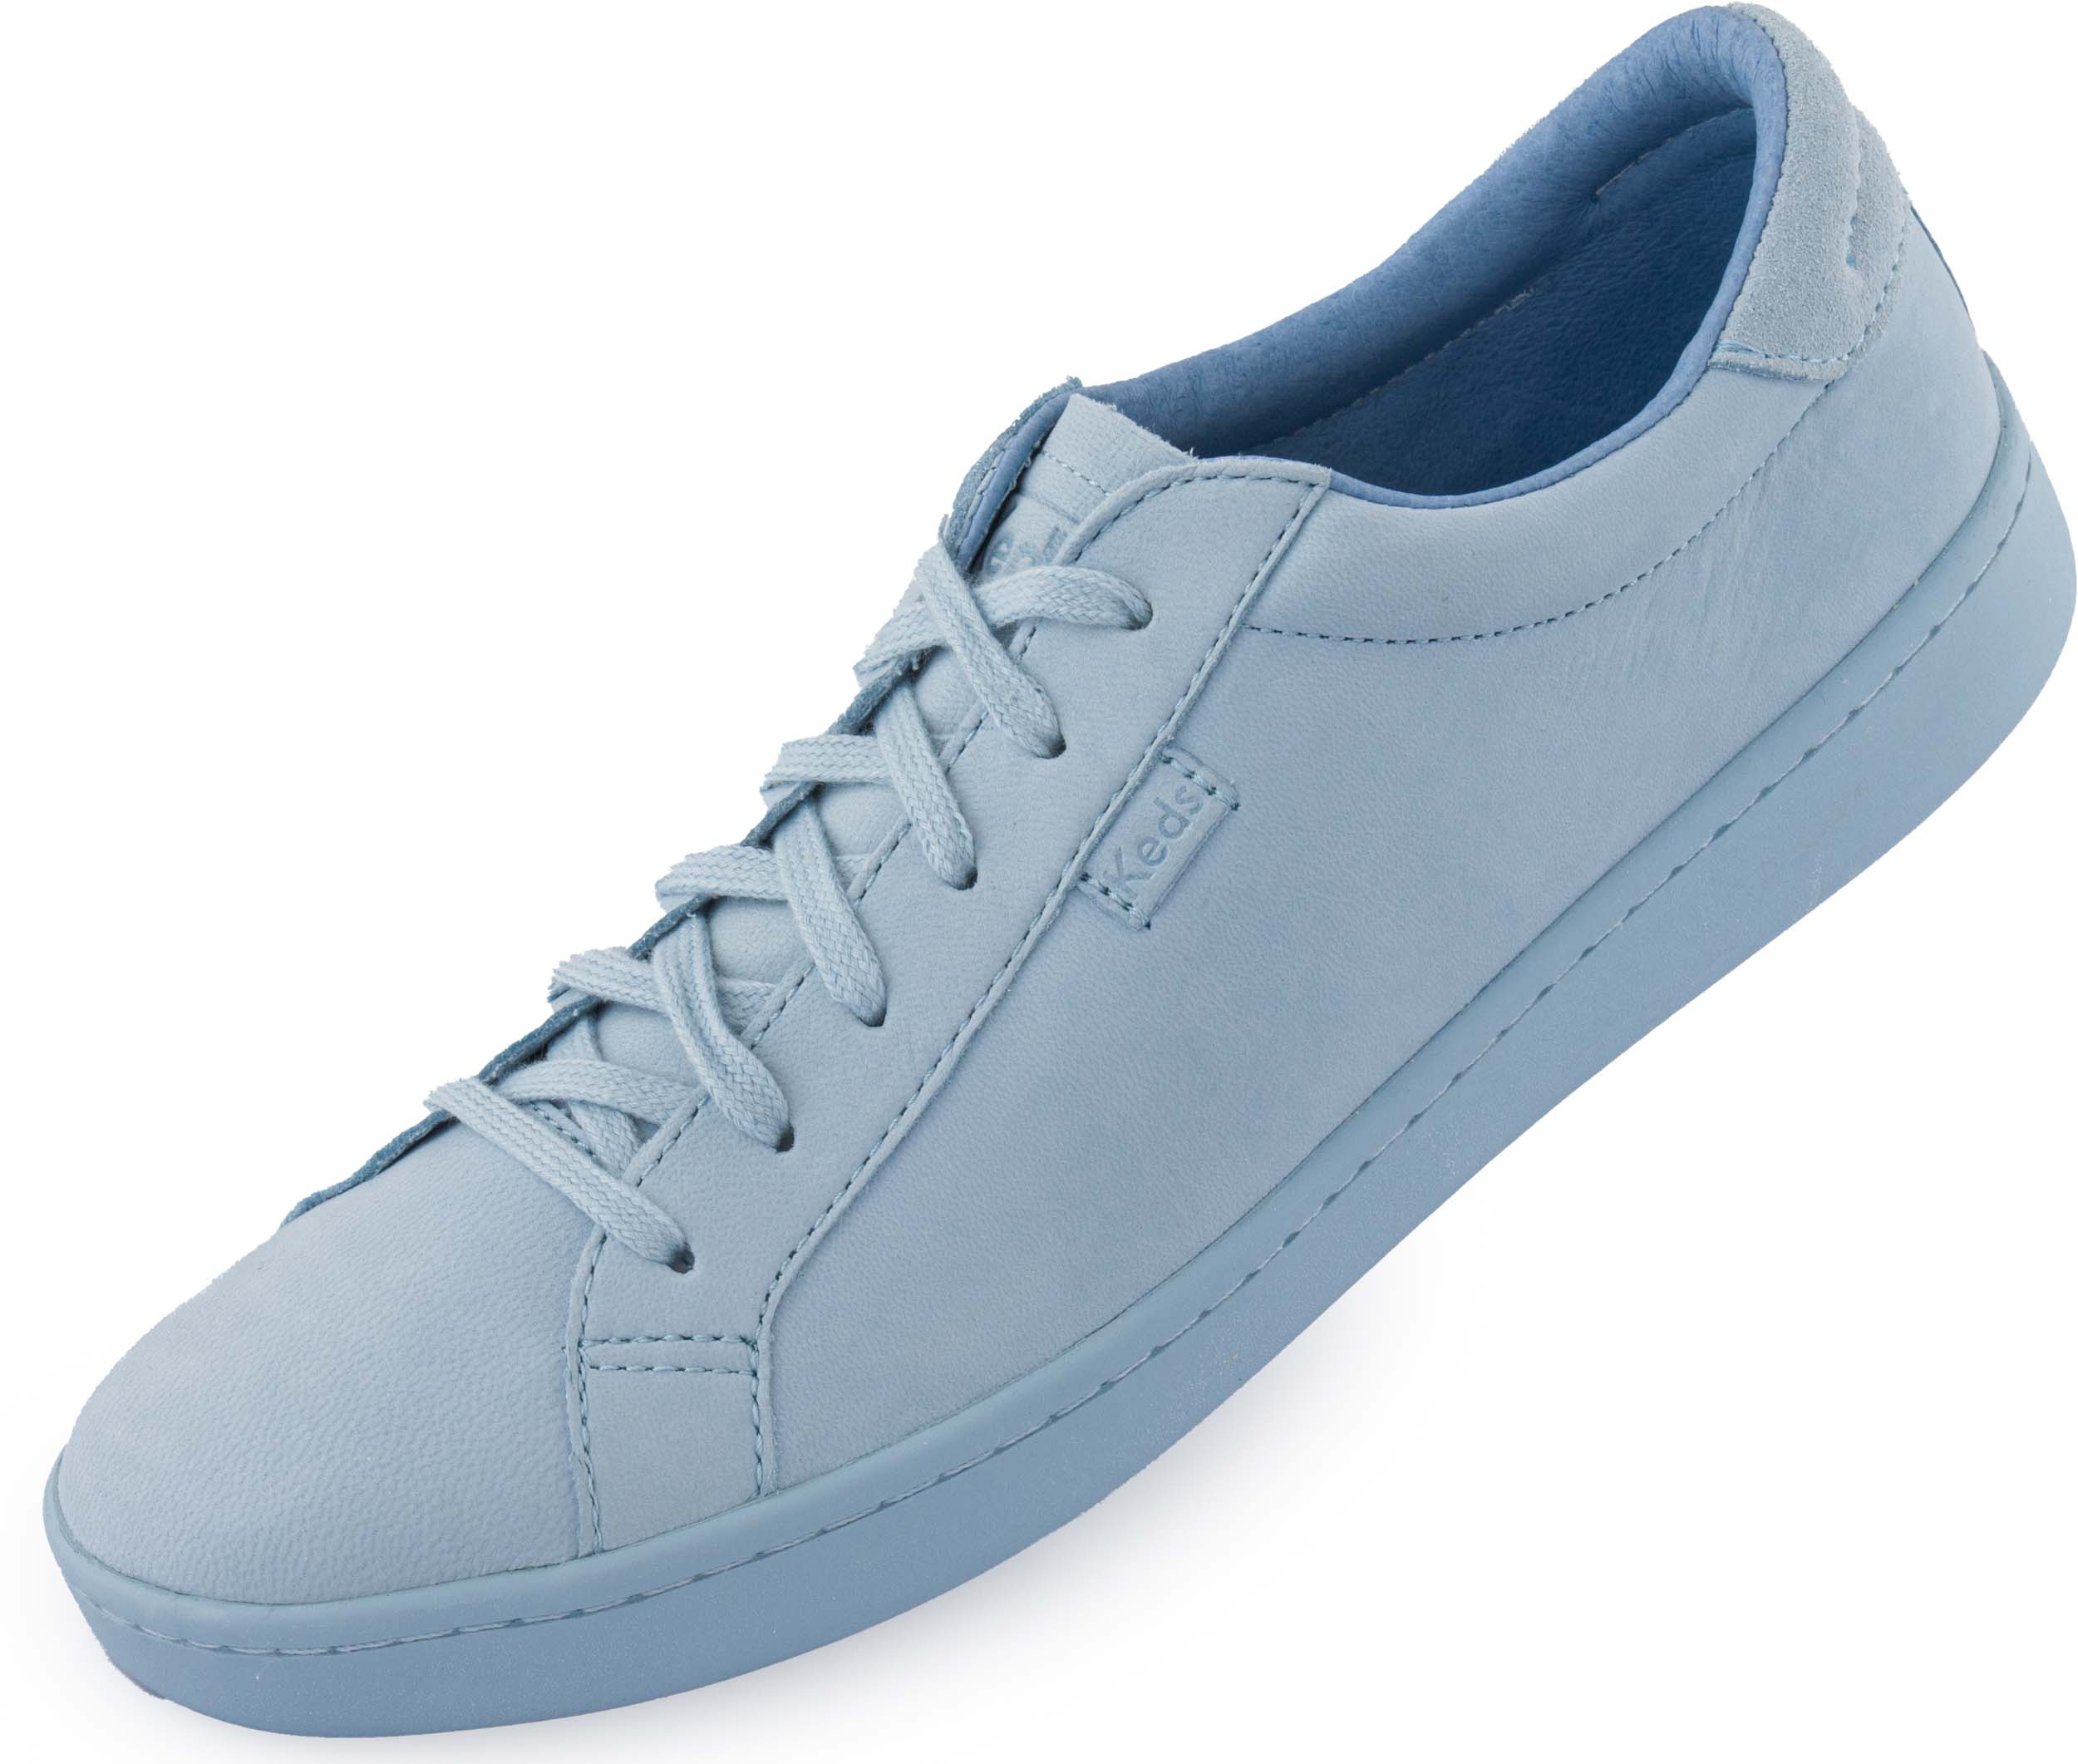 Dámské boty Keds Wms Ace Mono Leather Light Blue|40,5